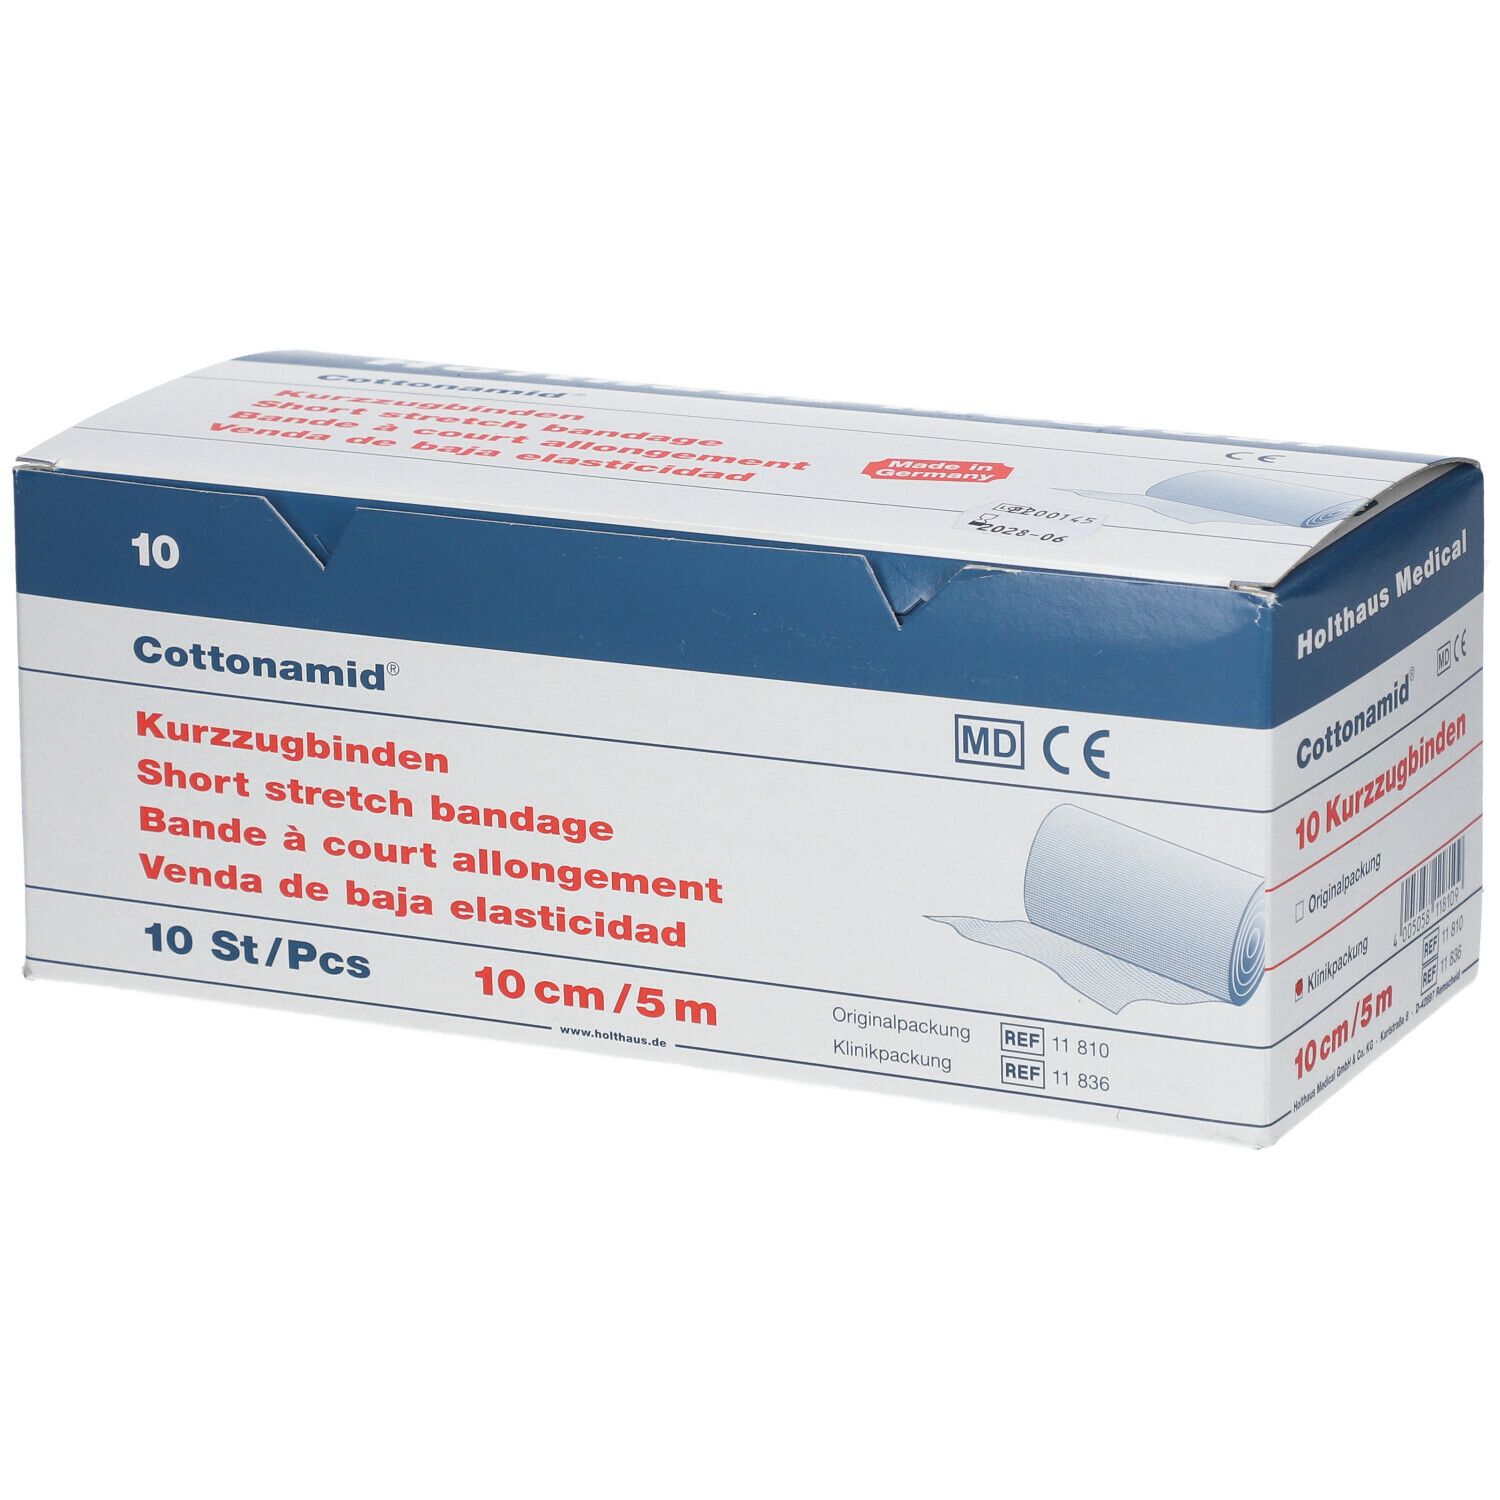 Holthaus Medical Cottonamid® Kurzzug-Binde Verband Binde Bandage